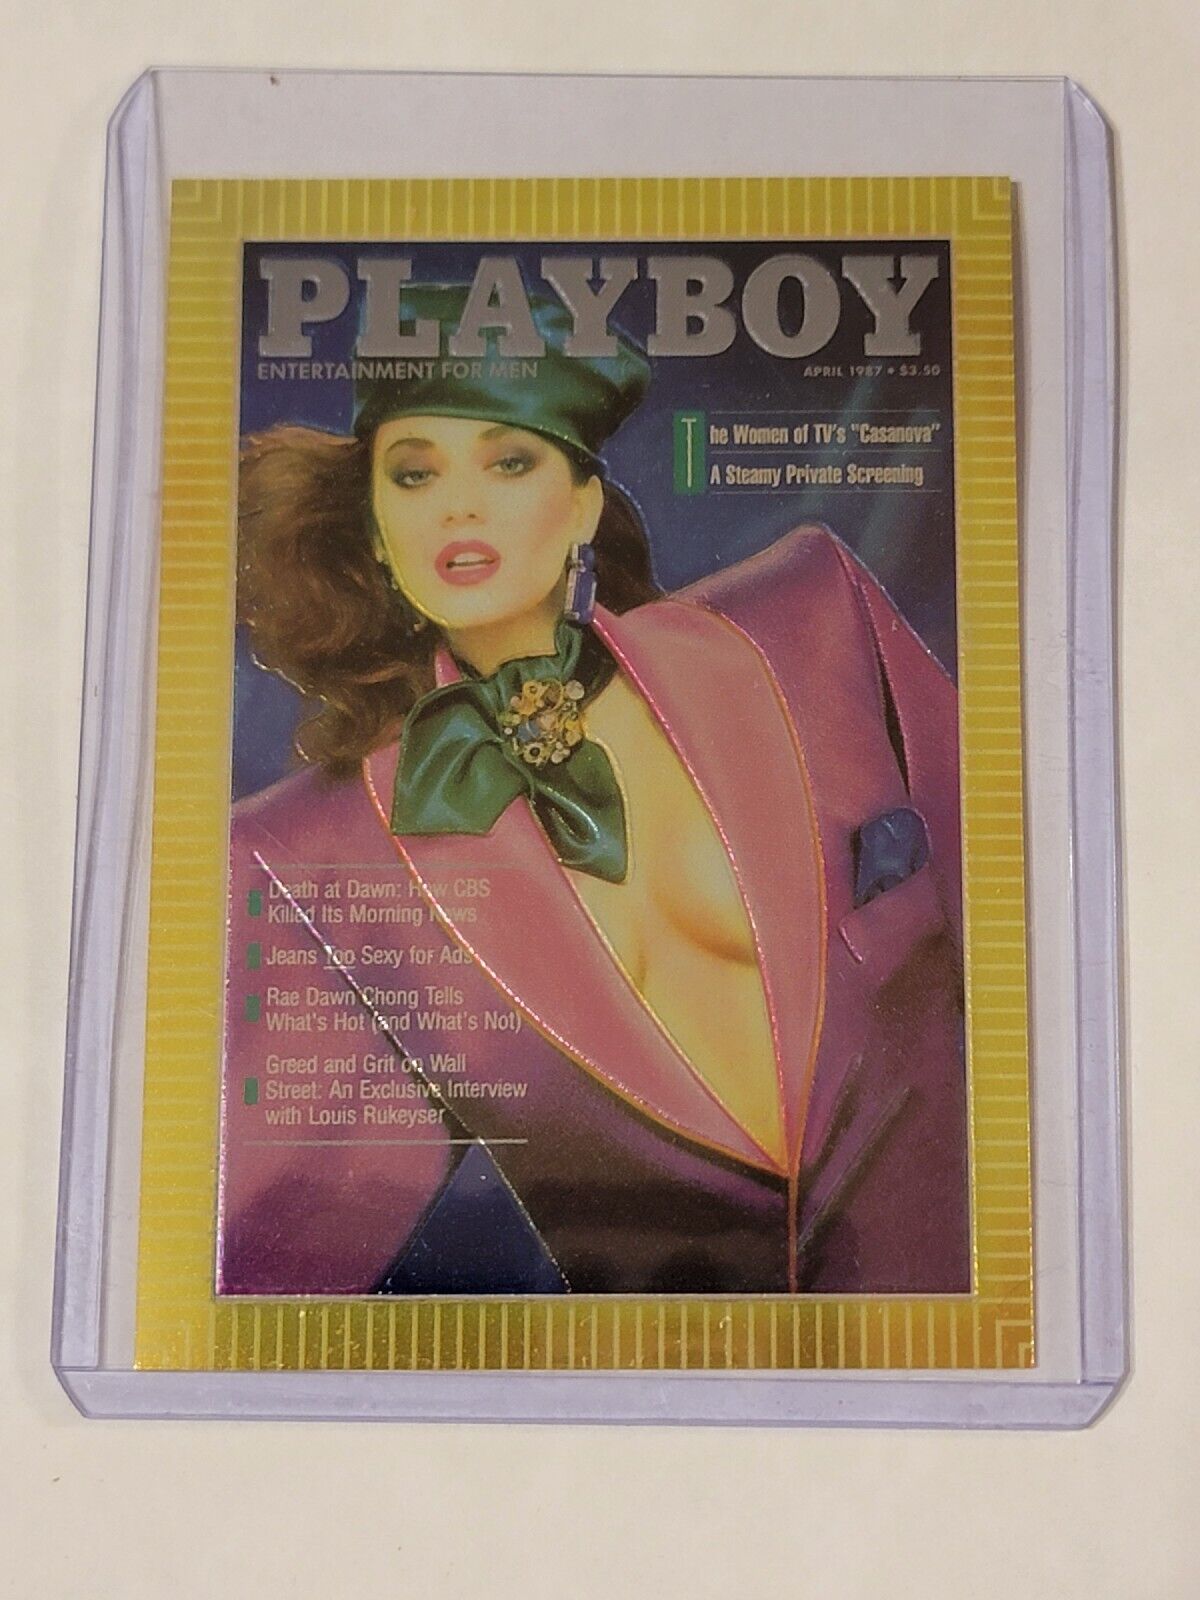 1995 Playboy Chromium Cover Card #181 April 1987 Ava Fabian Vol.34 No.4